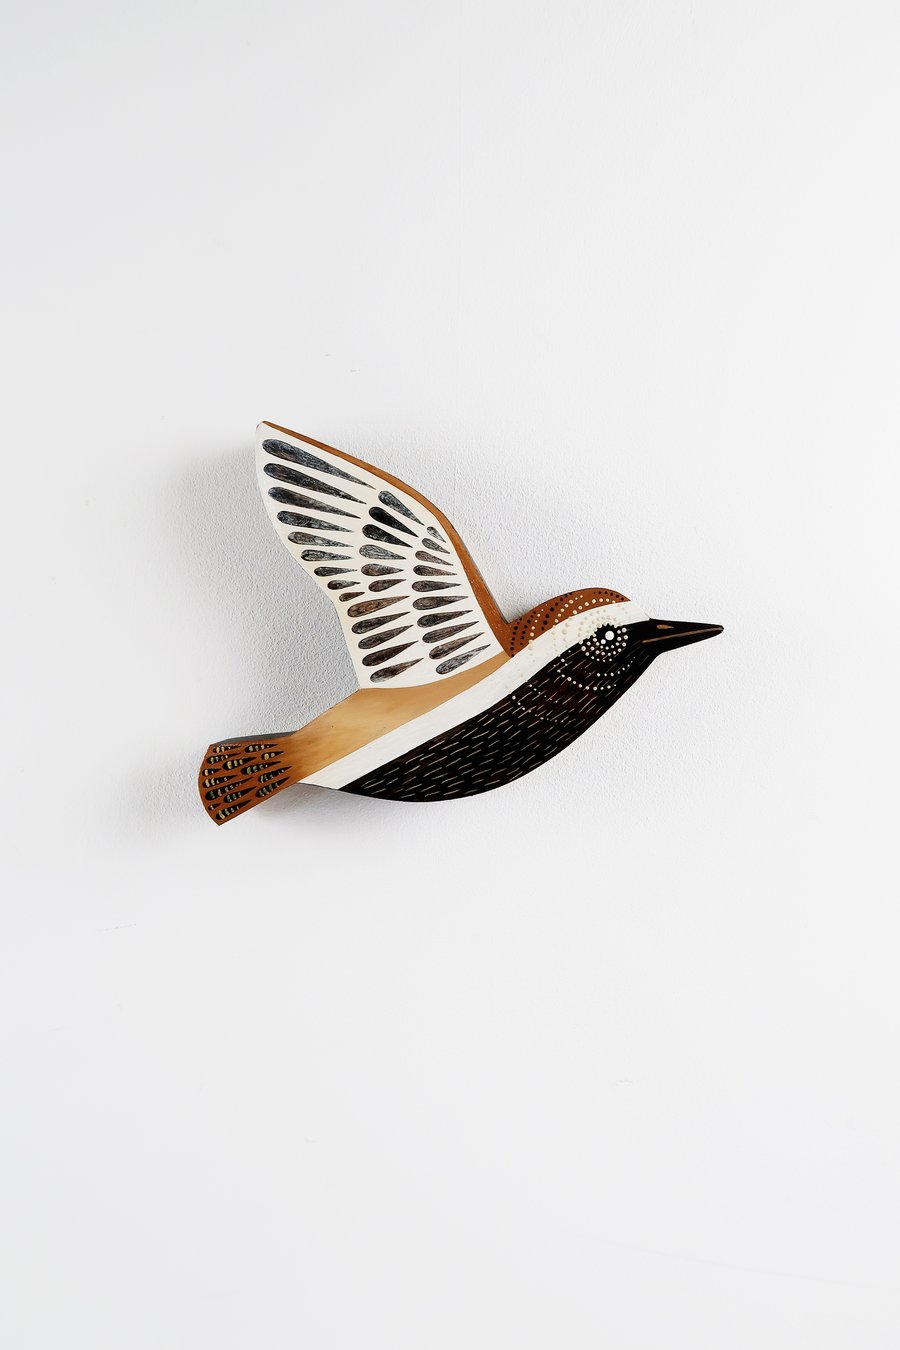 European golden plover wall art, bird wall hangings, gift for bird lover